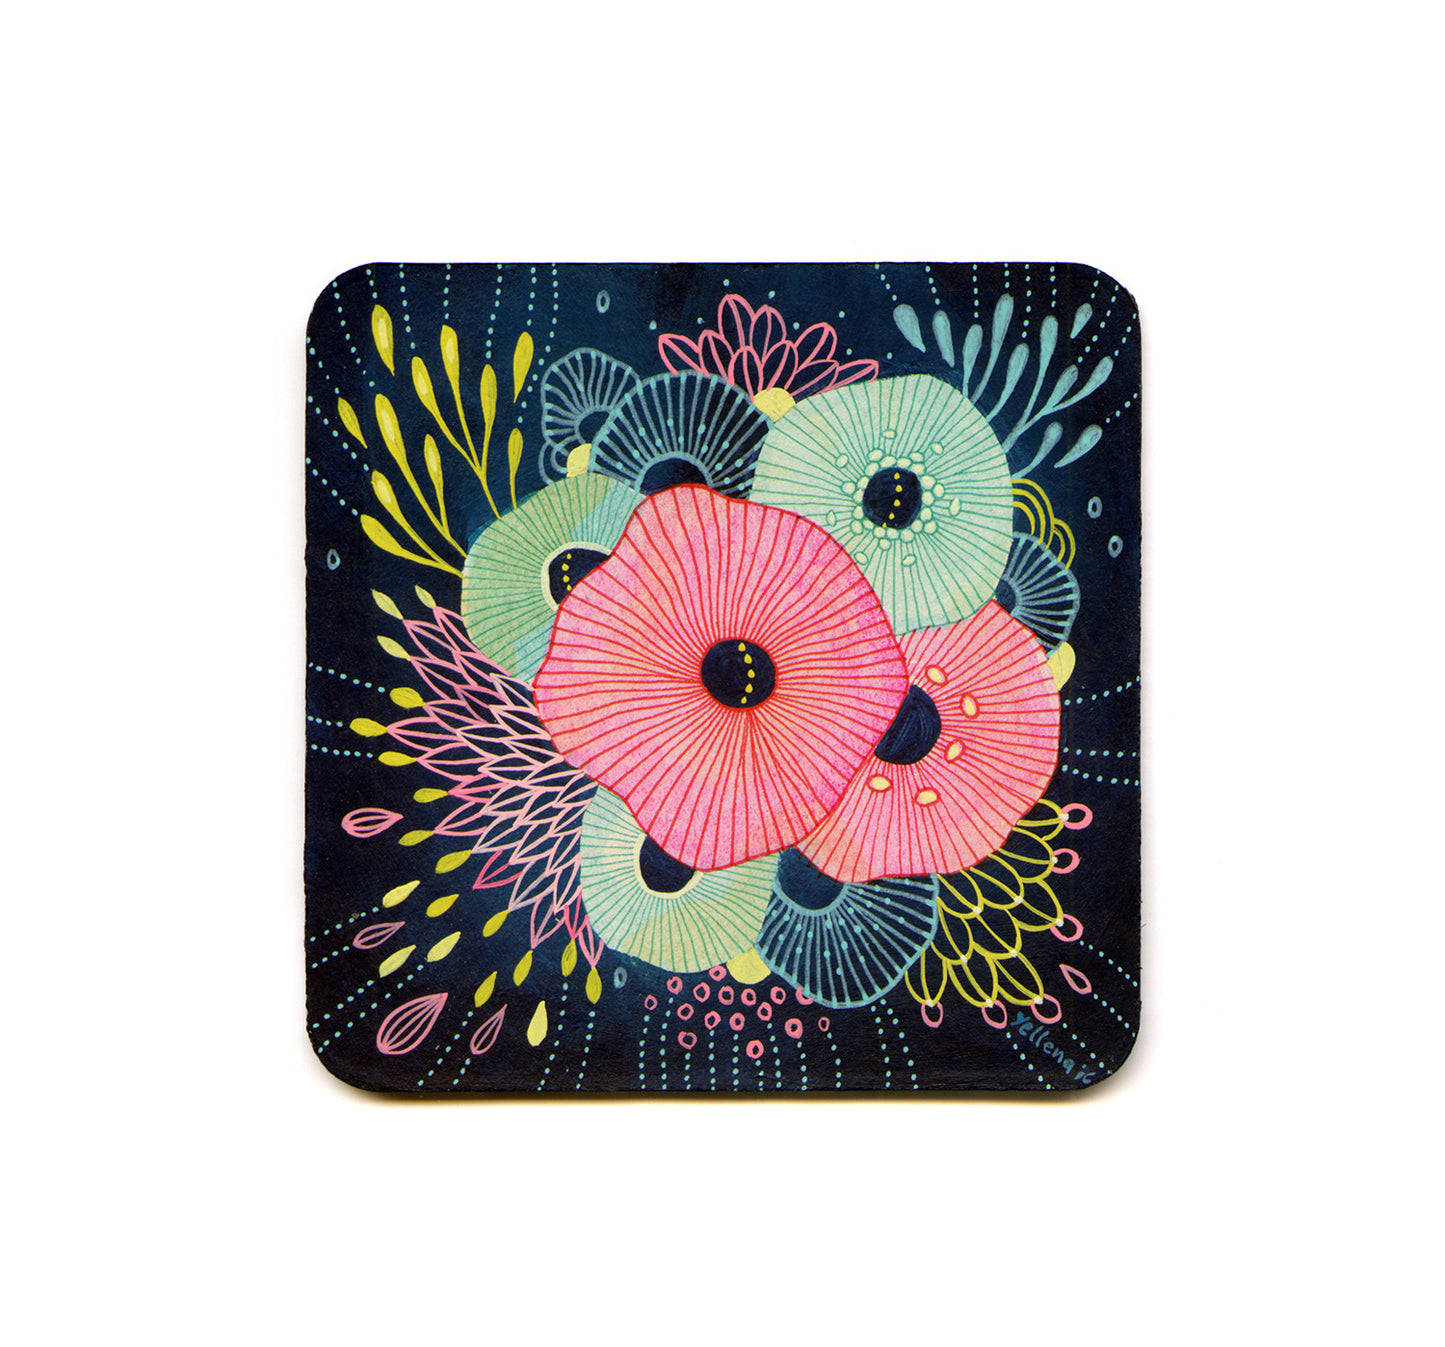 S1 Yellena James - Floral 4 Coaster